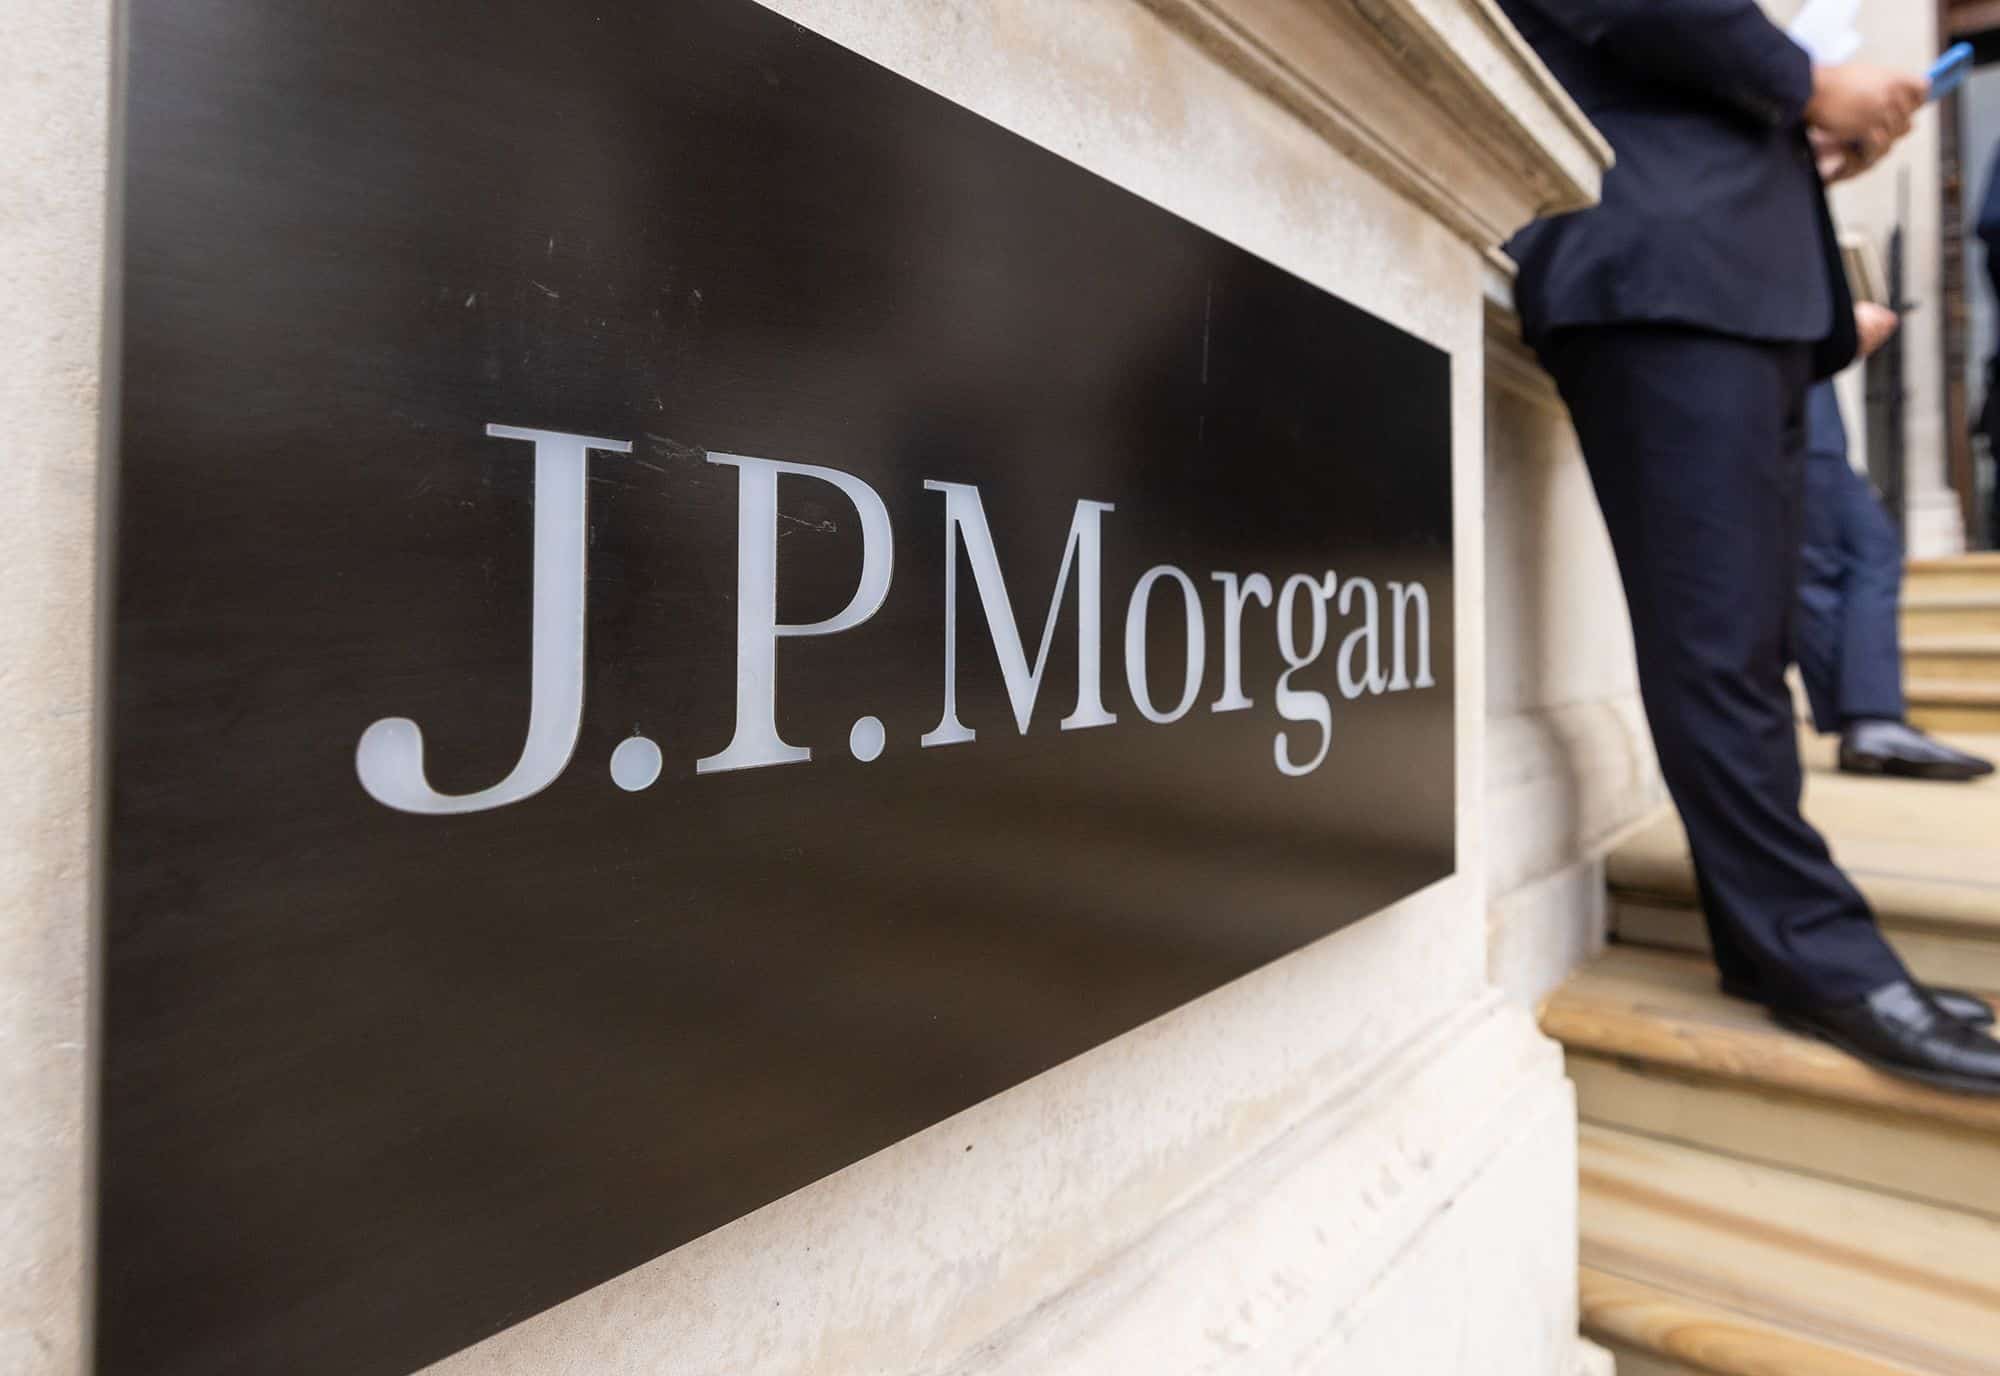 Bank of America, Citi, Credit Suisse and JPMorgan launch loan platform